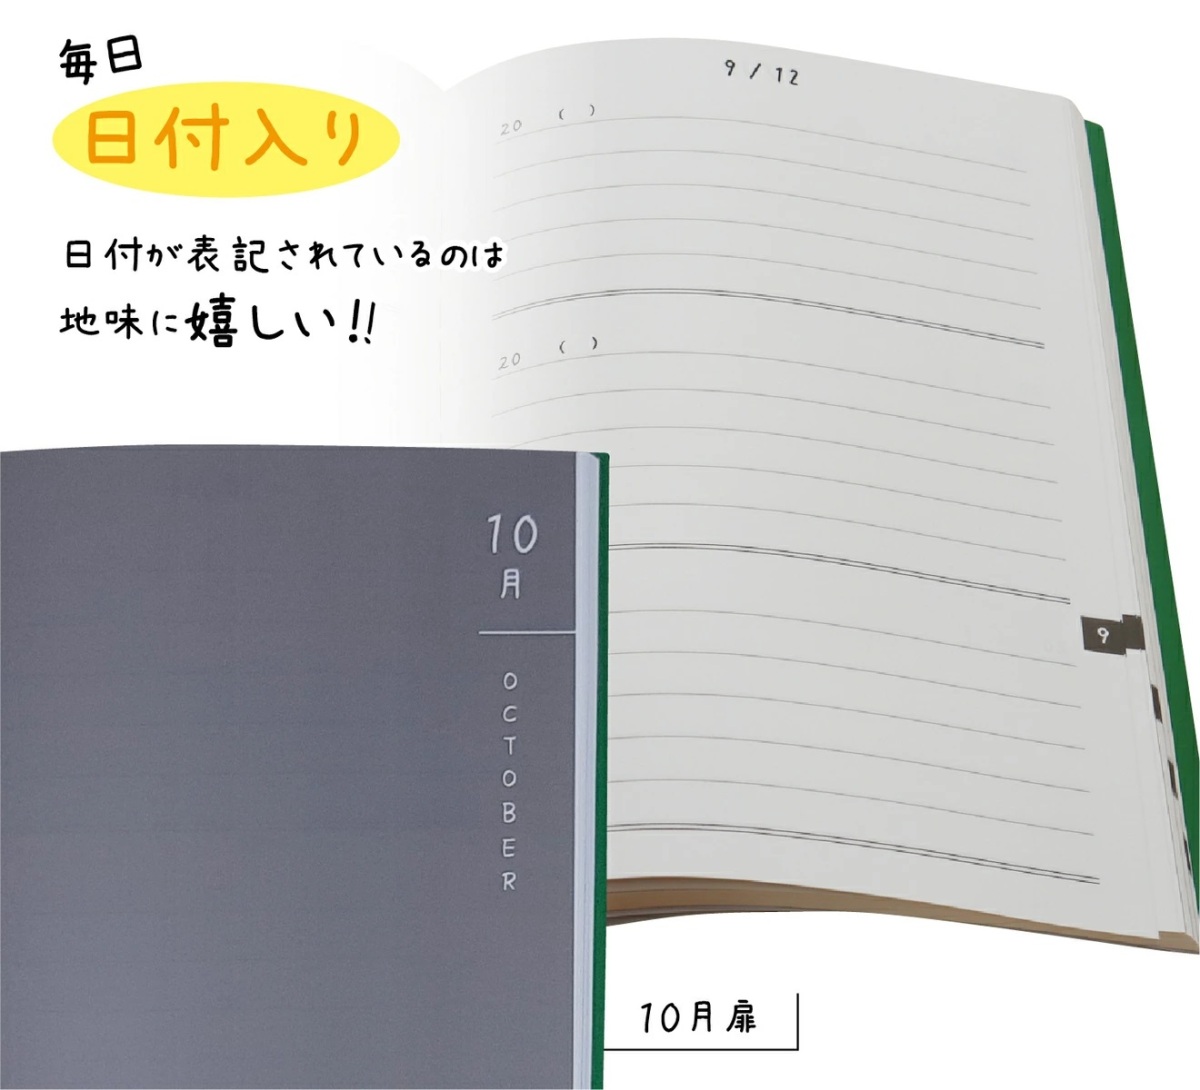  Note жизнь 3 год дневник дневник .A5 (21cm×15cm) сделано в Японии soft покрытие дата . отображать есть ( когда из тоже начало ...) ( зеленый )